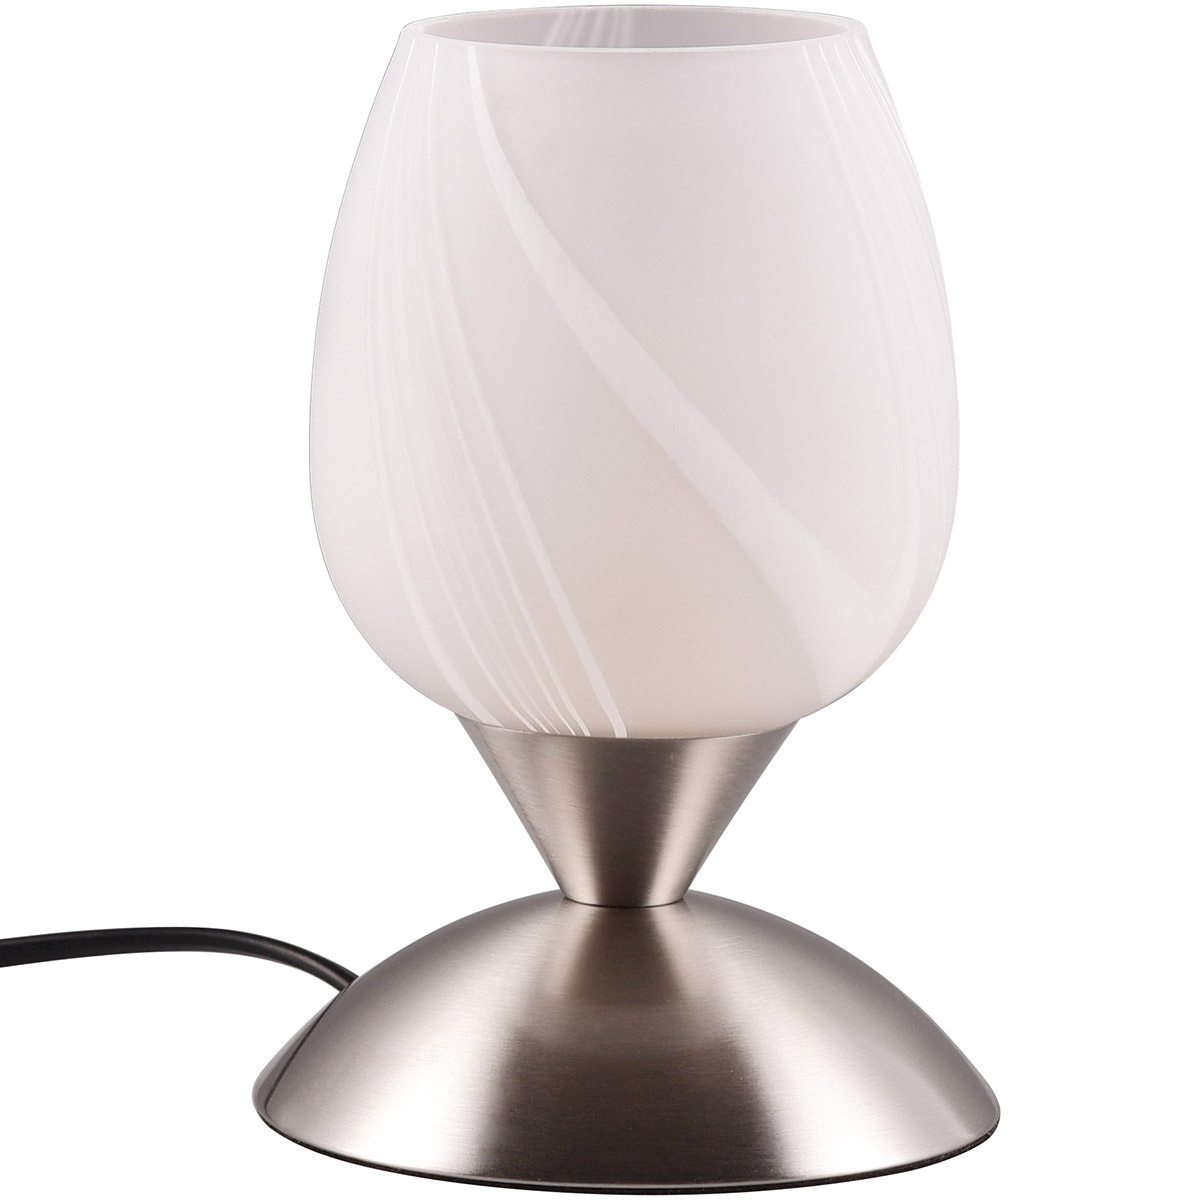 LED Tafellamp - Trion Bekre - E14 Fitting - 1 lichtpunt - Mat Nikkel - Metaal - Wit Geborstelde Glas